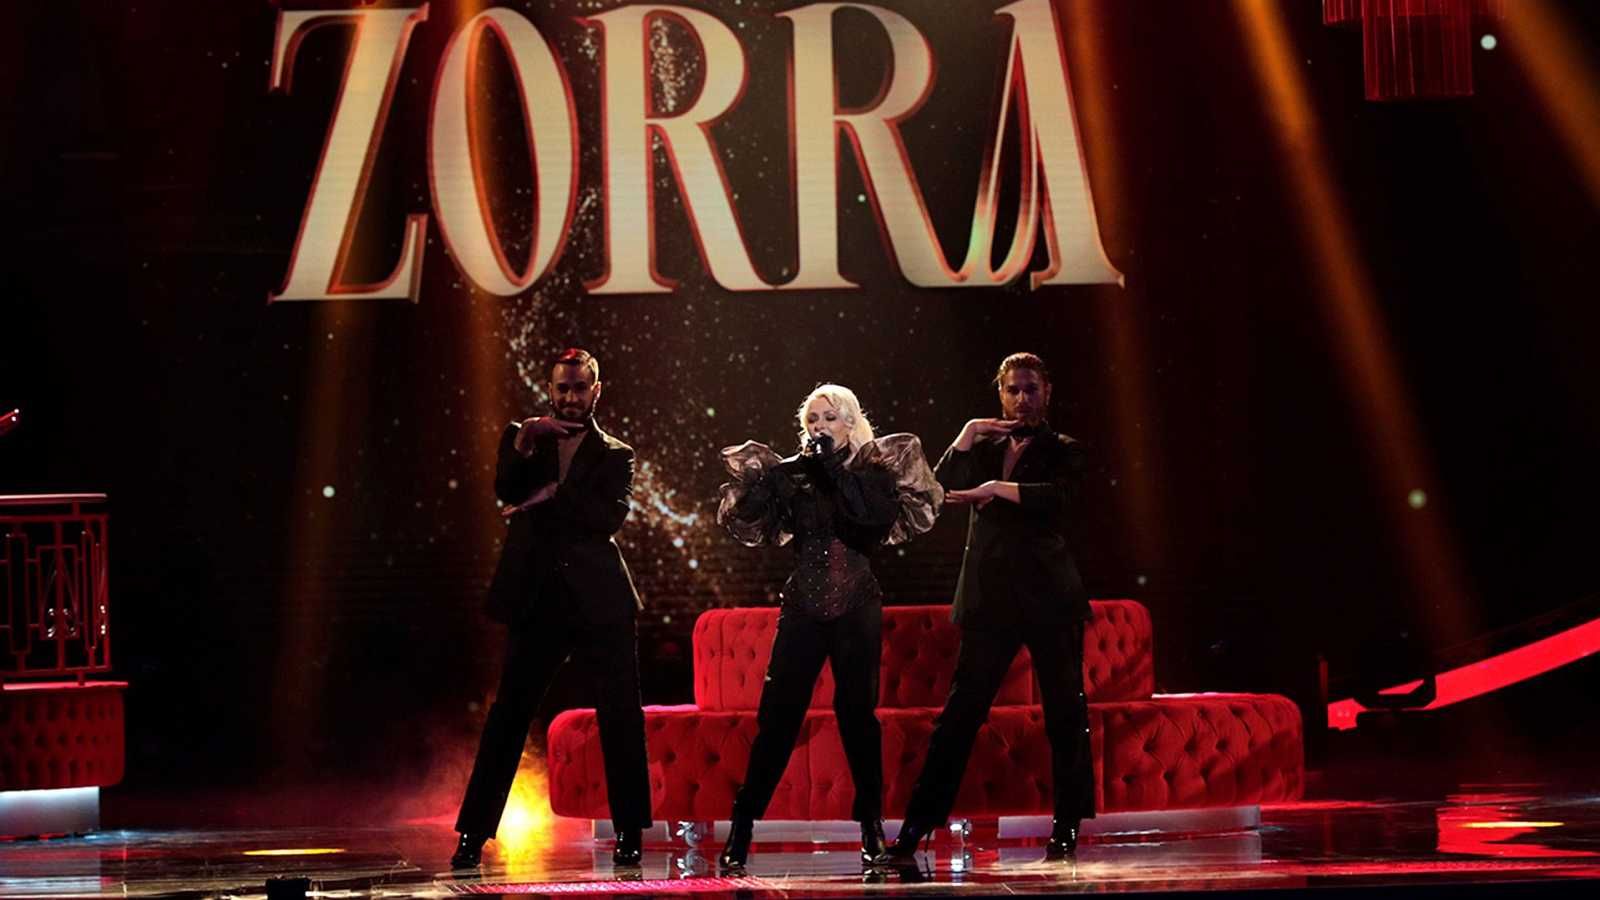 ZORRA BENIDORM FEST  Eurovisión no quiere 'zorras': ¿tendría Nebulossa que  cambiar la letra para participar en el festival?